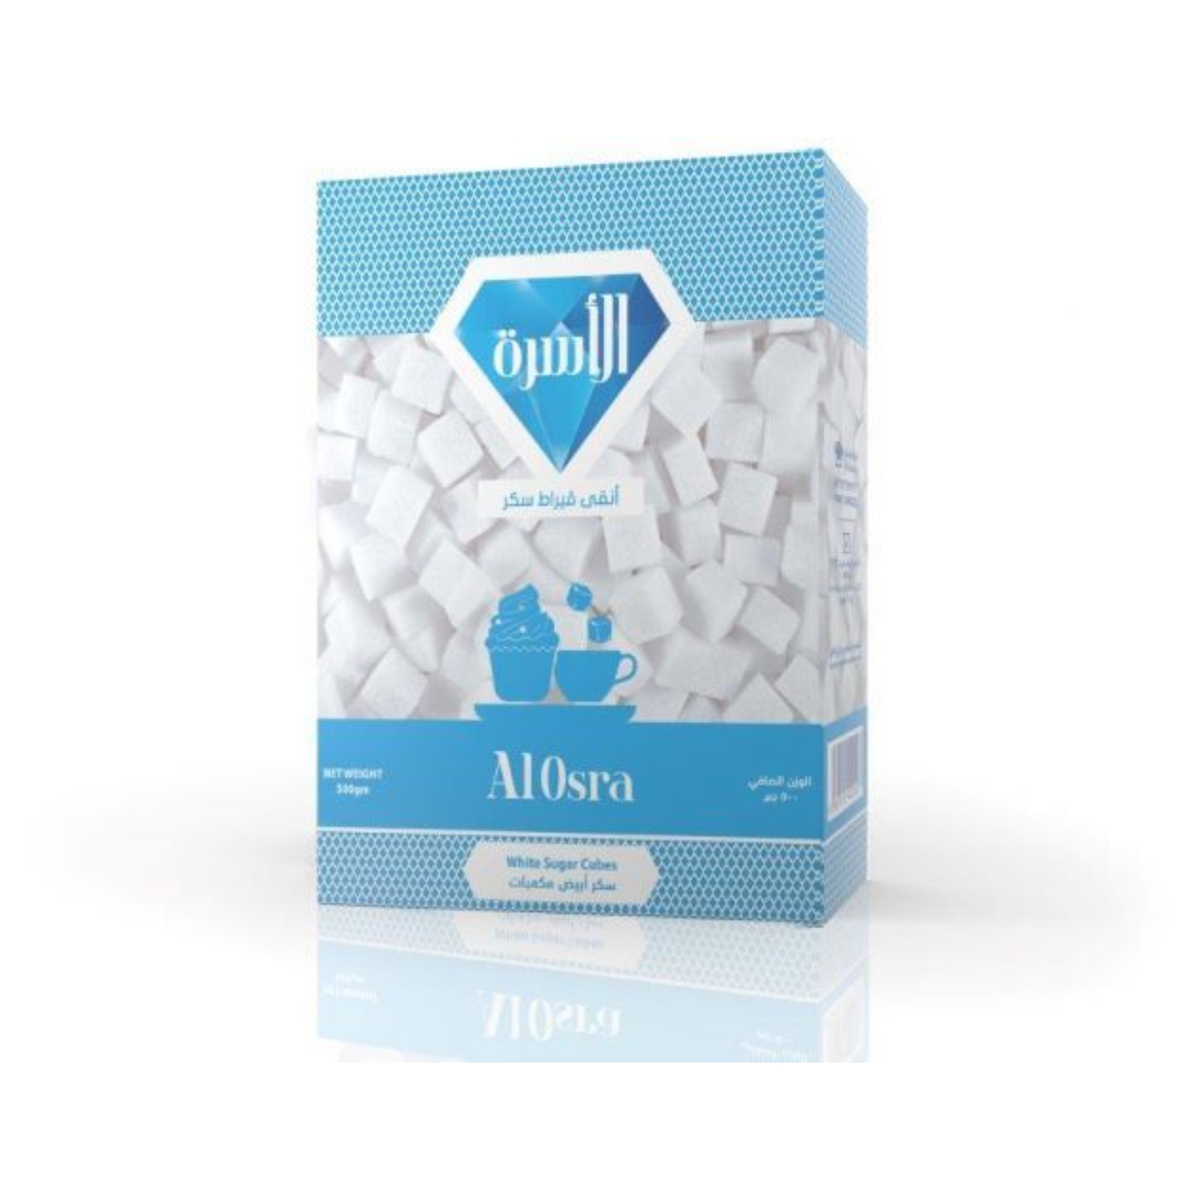 Al Osra White Sugar Cubes 500g